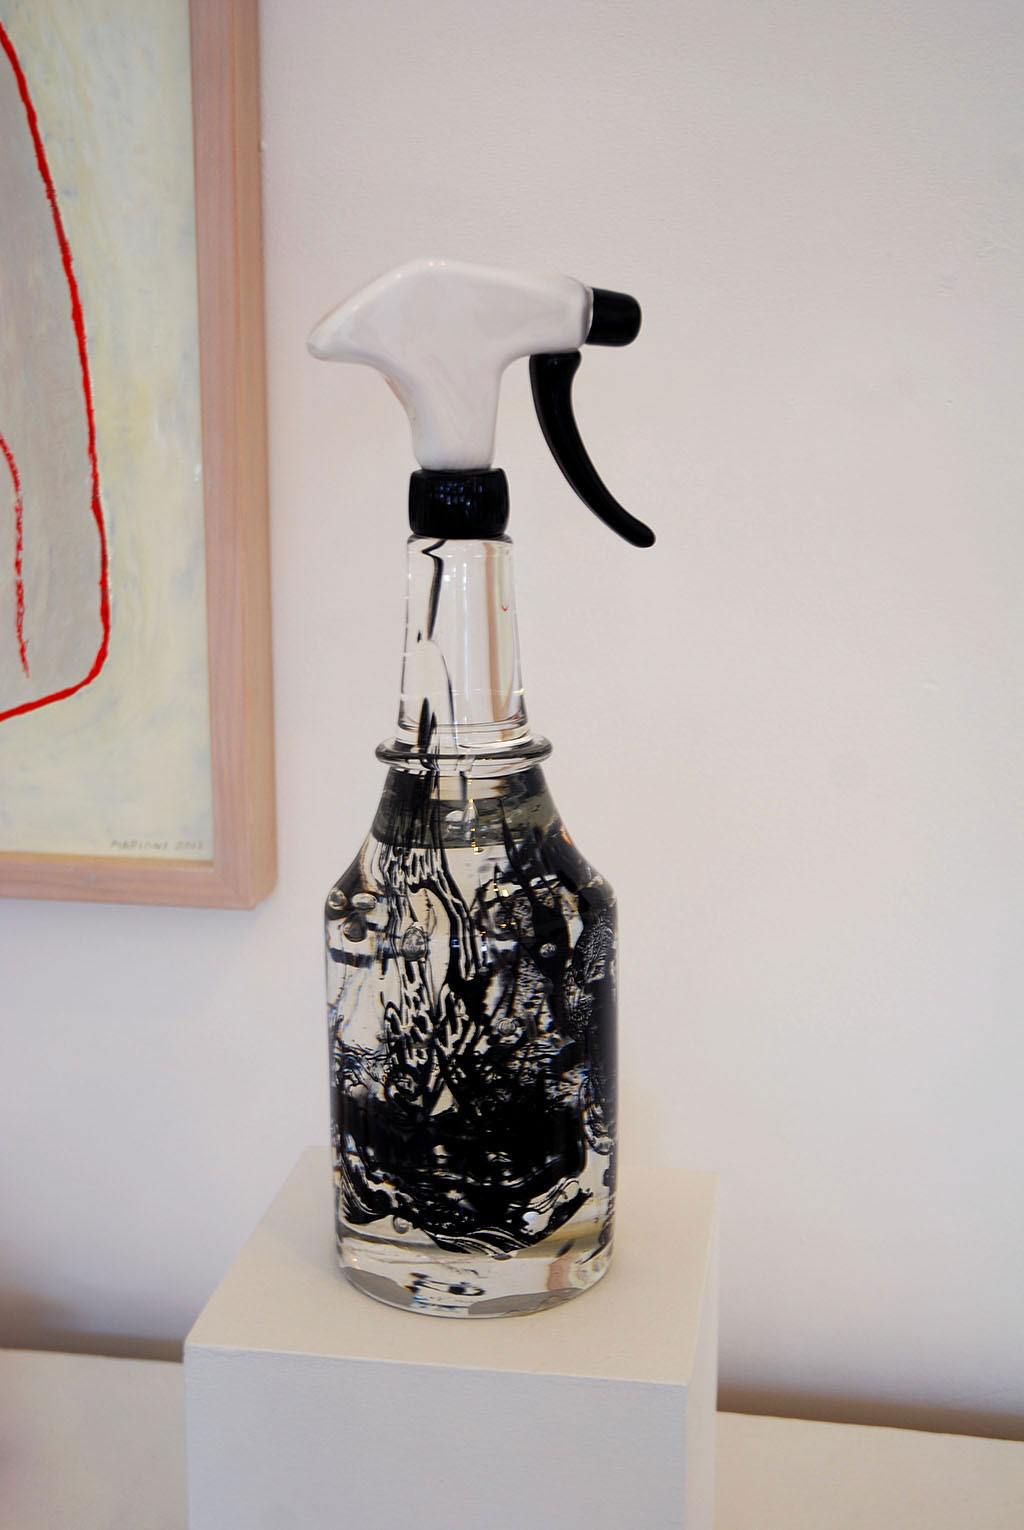 Susan Stinsmuehlen-Amend, Common Vessels/ Spray Bottle, 2006